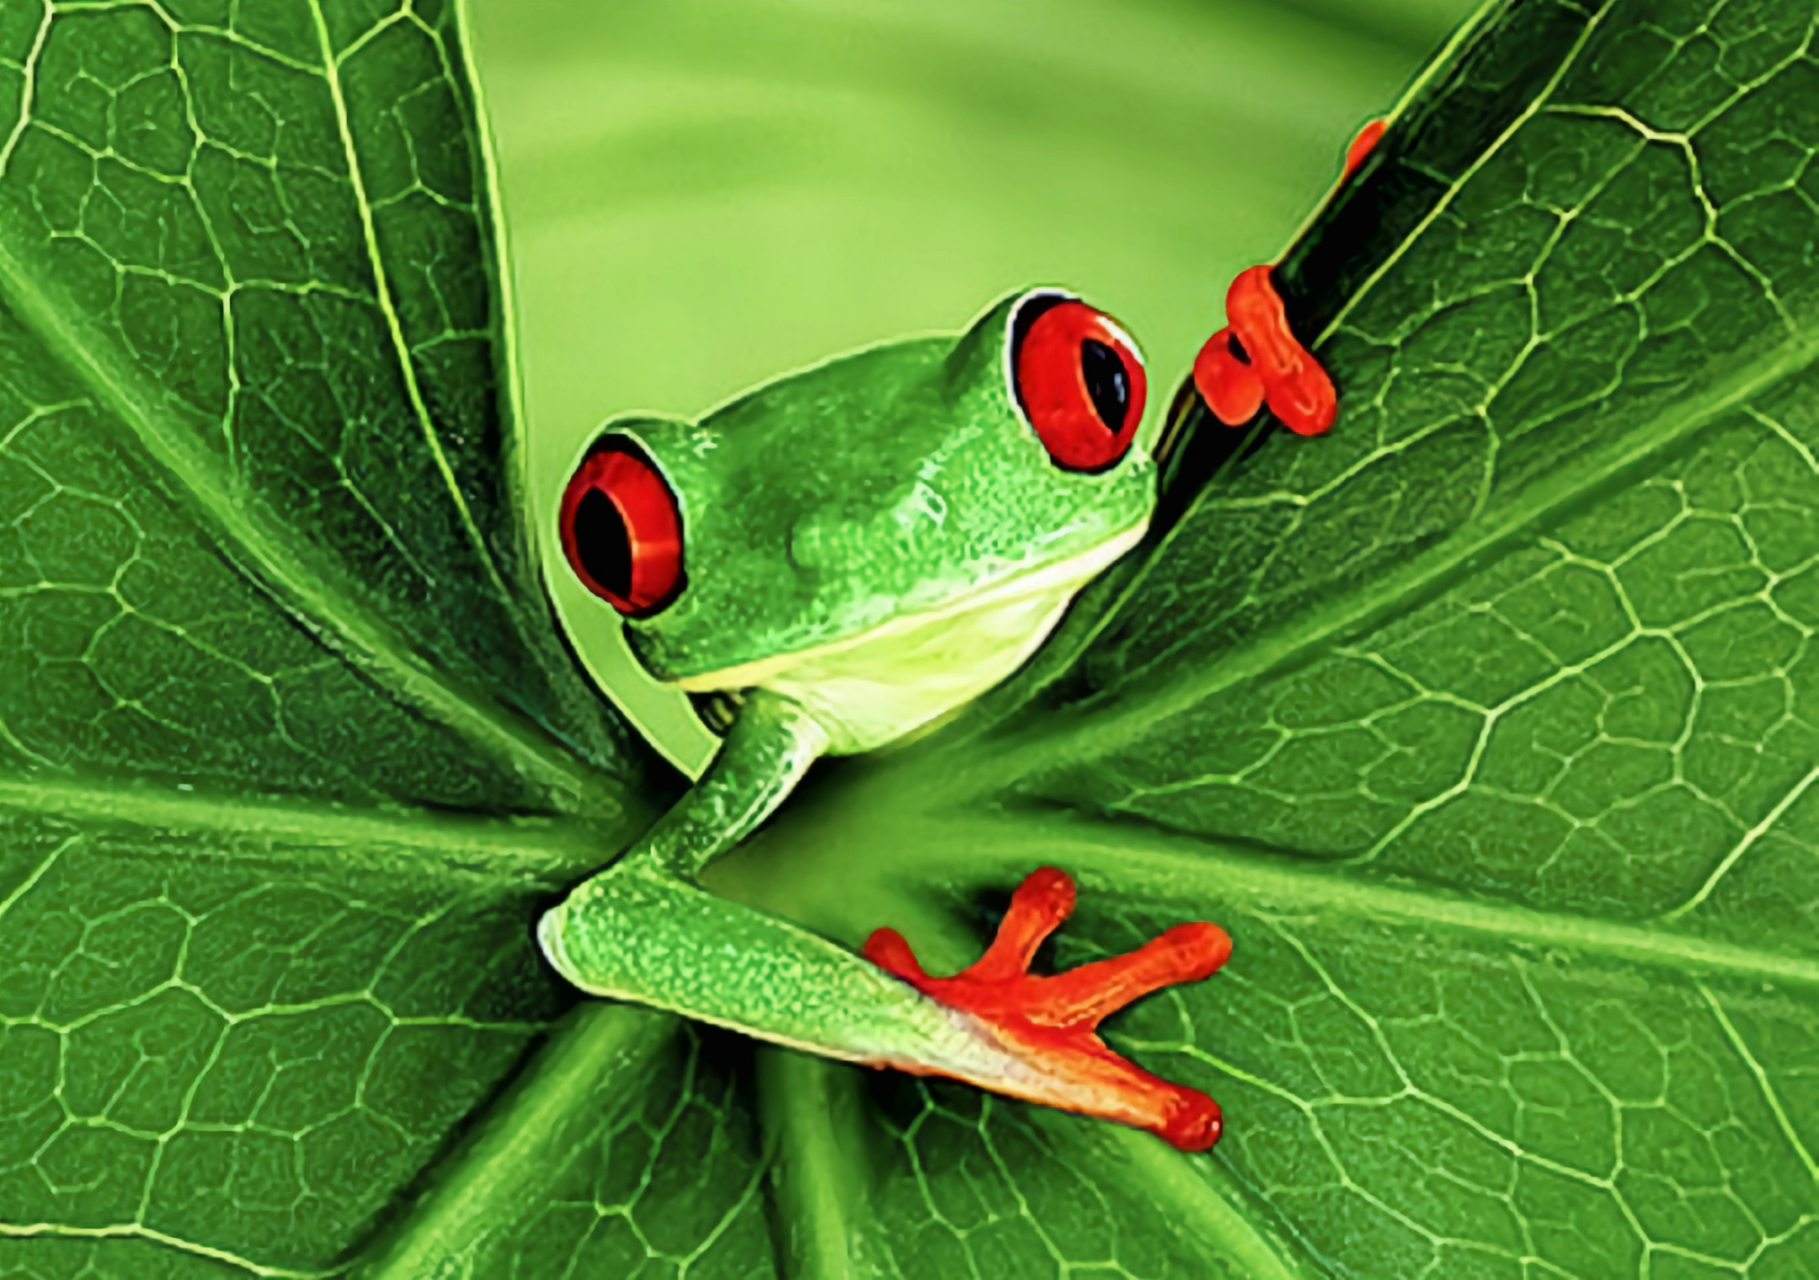 每天认识一种动物——红眼树蛙 红眼树蛙别名丽眼树蛙,原产于北美洲